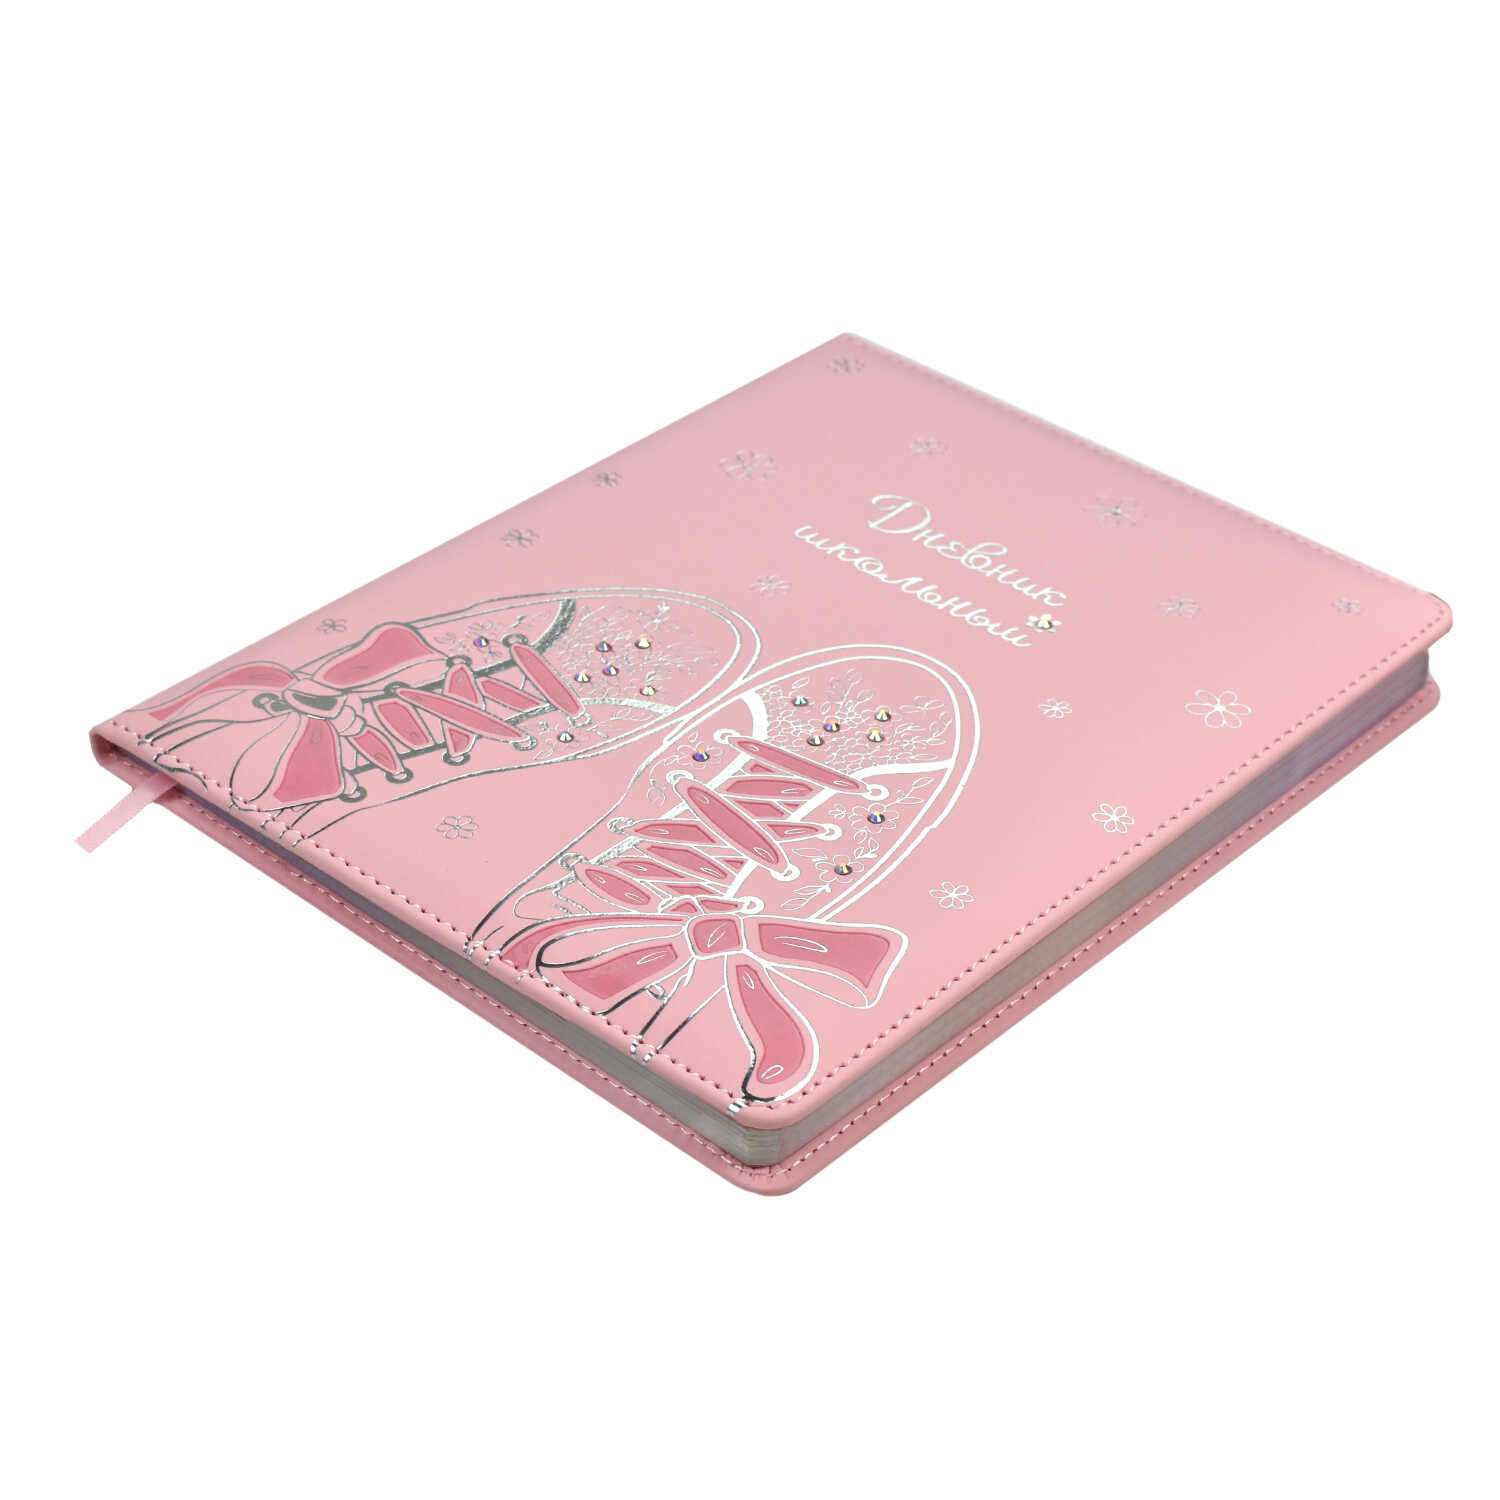 Дневник школьный ТД Феникс Кеды розовые 48 листов твёрдый переплёт с поролоном - фото 5